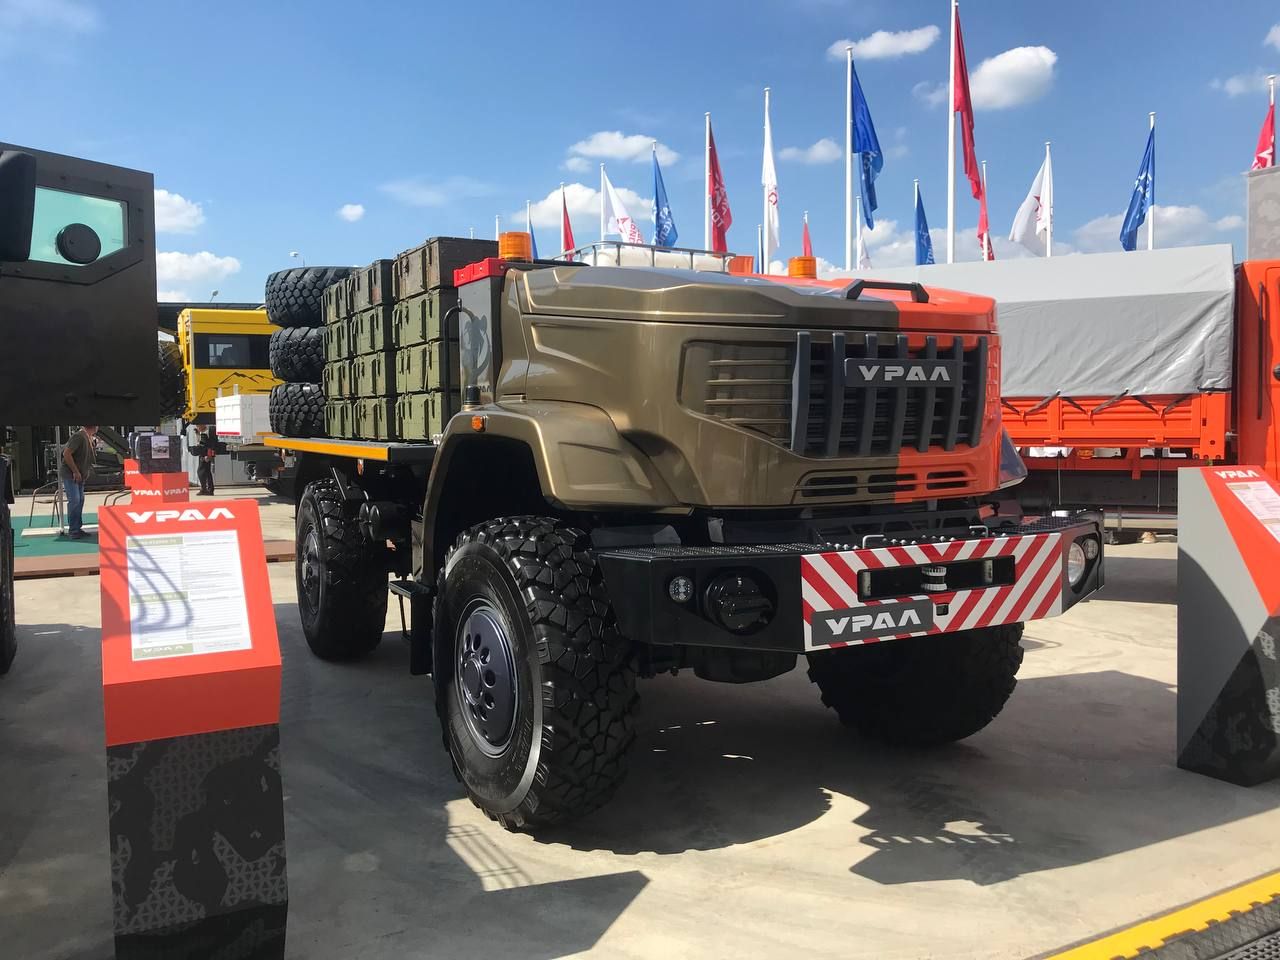 Стали известны характеристики представленного на «Армии-2022» беспилотного грузовика «Урал» #Армия2022